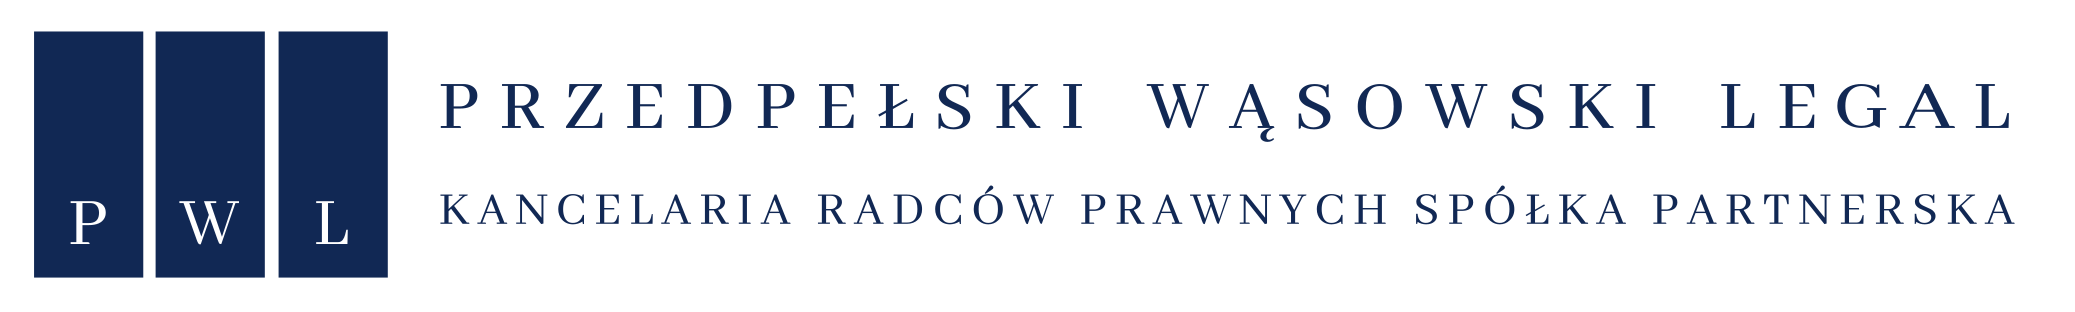 Obsługa i porady prawne dla firm i przedsiębiorców, postępowania upadłościowe - Kancelaria Radców Prawnych Przedpełski Wąsowski Lorek Warszawa